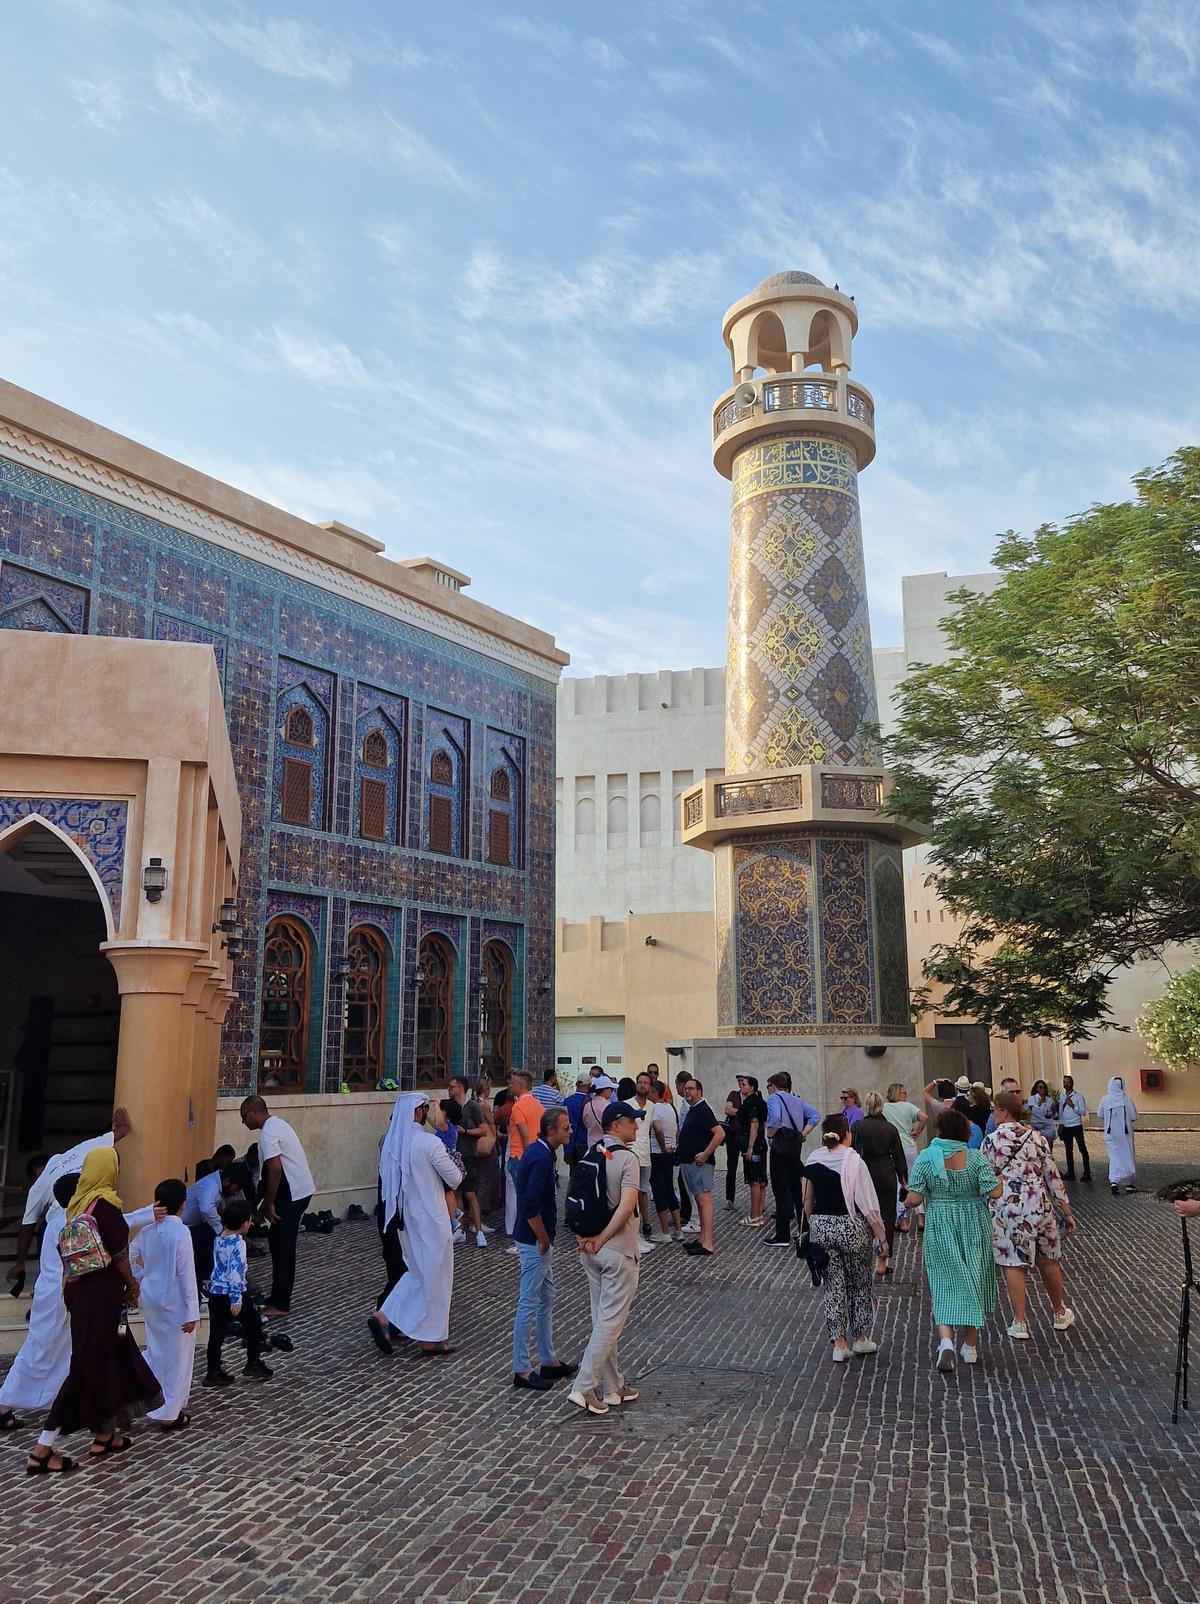 De moskee van Katara werd ontworpen door een vrouw en is versierd met duizenden gekleurde tegeltjes. (foto Pvanoyen)